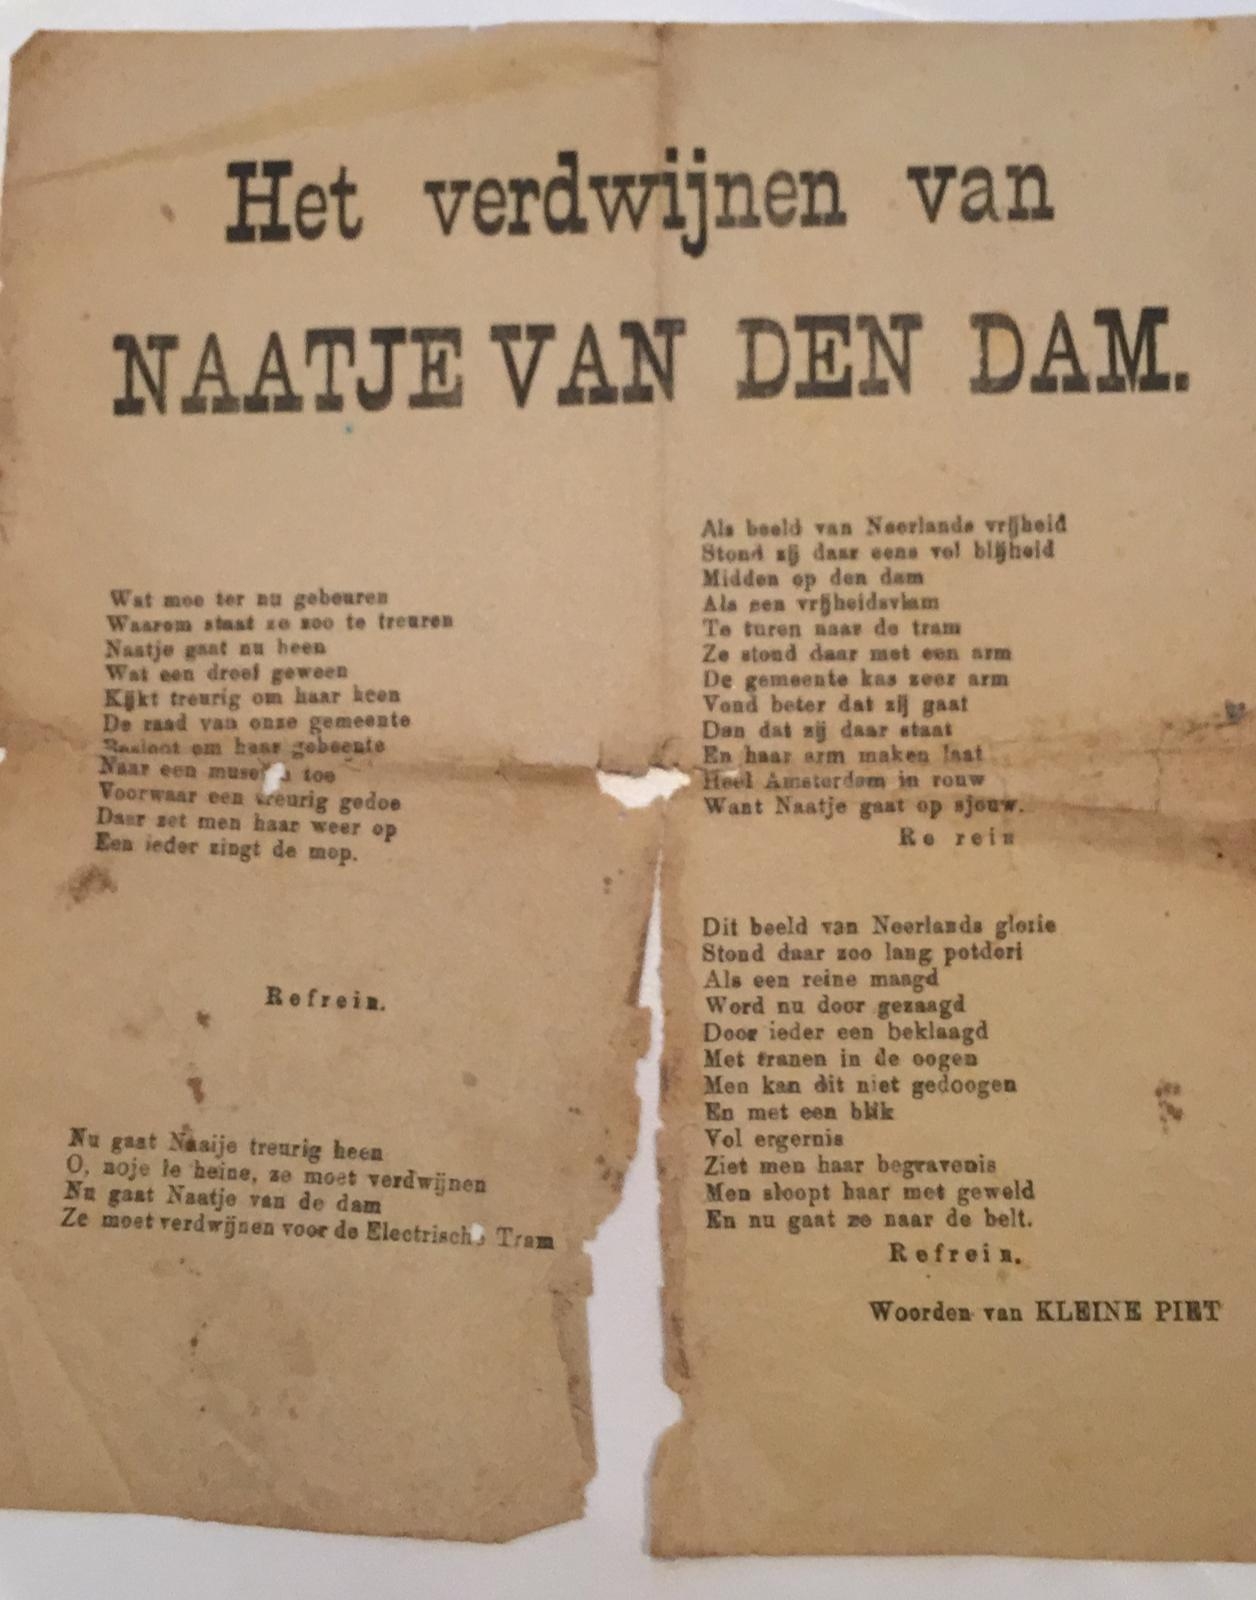 1 page on Het verdwijnen van Naatje van den Dam. Signed with: Woorden van Kleine Piet.